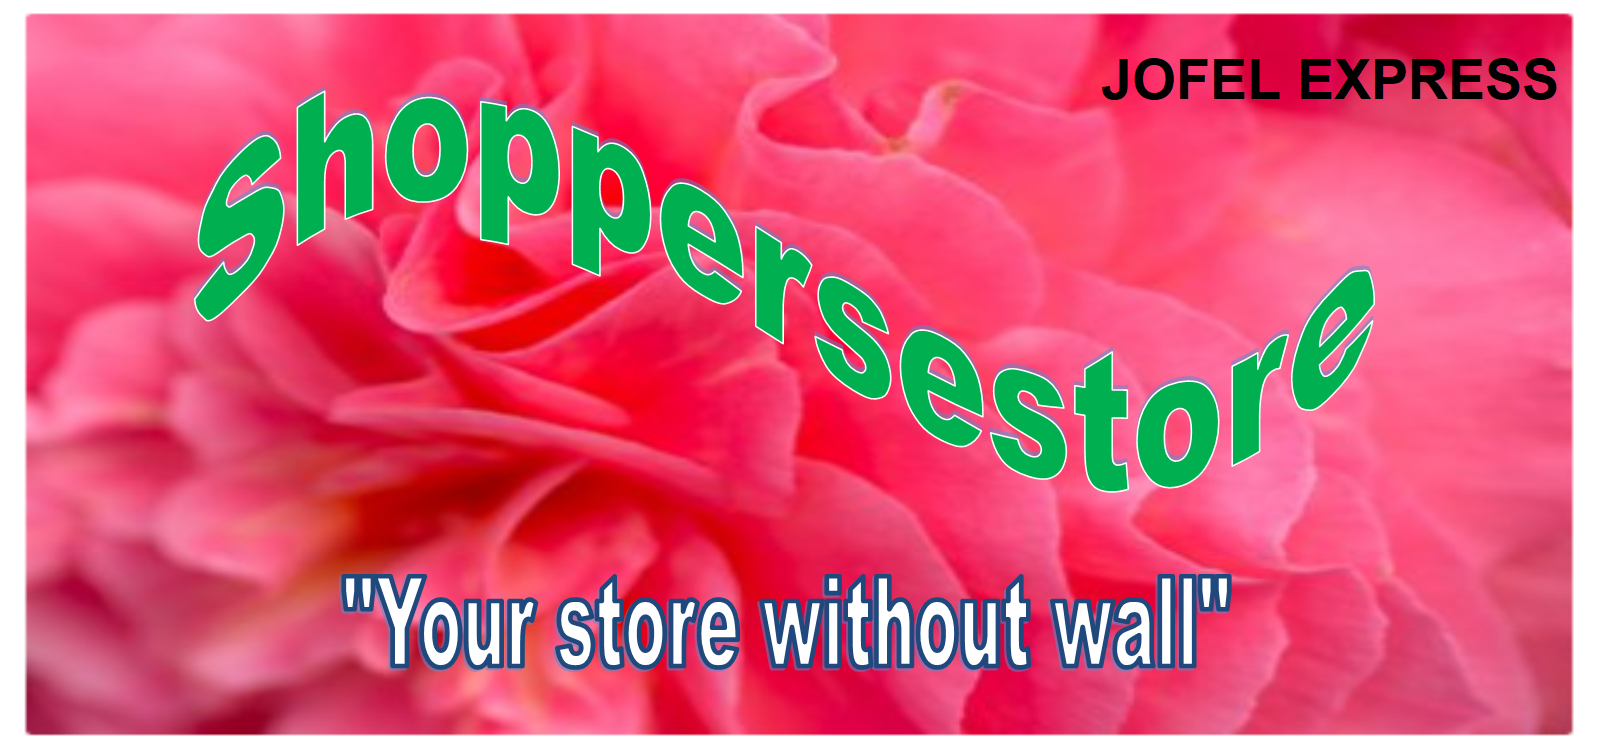 ShoppersEstore by Jofel Express